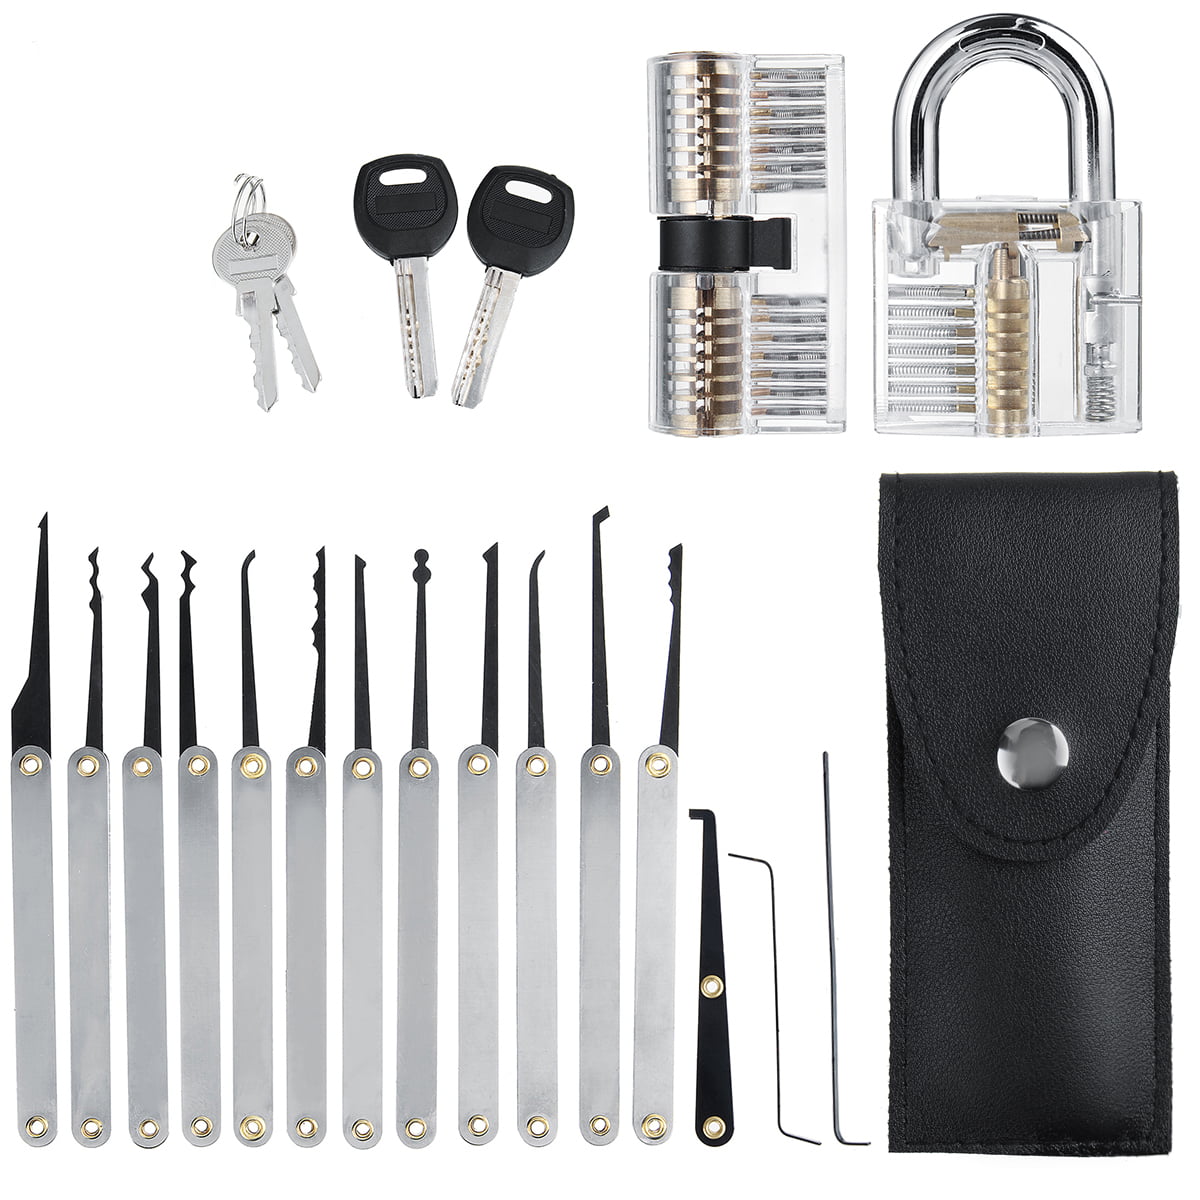 15pcs Lock Picking Set Kit Tool mit zwei transparenten Praxis Training X9K4 